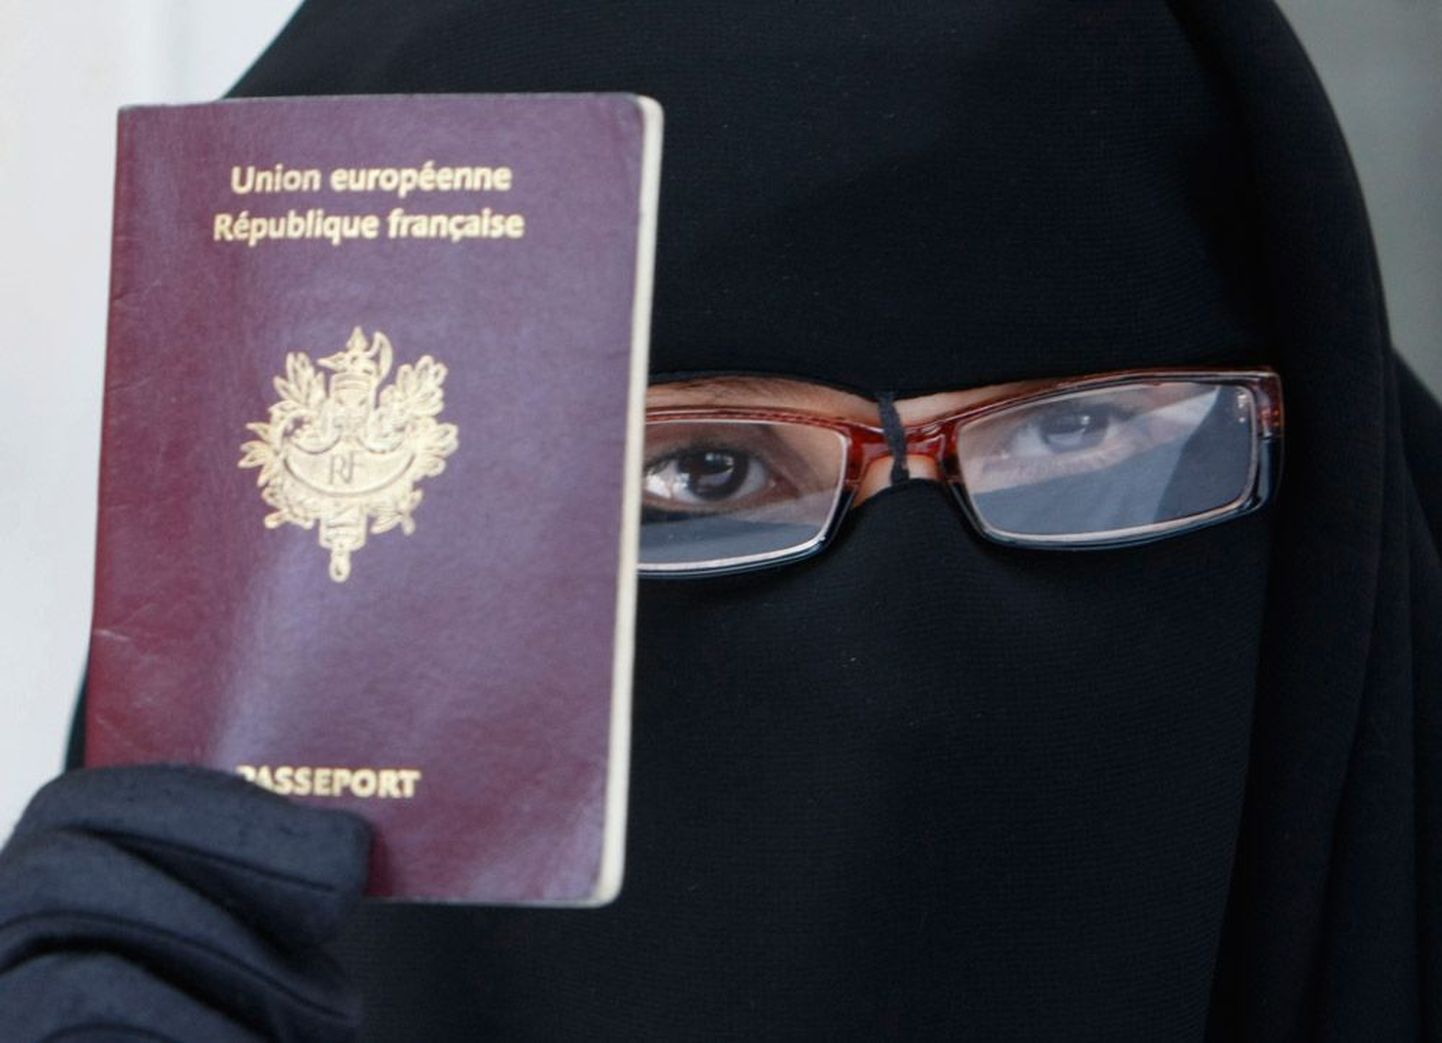 Женщина в никабе с французским паспортом. По мнению правительства Франции, запрет на ношение бурки и никаба направлен на то, чтобы обеспечить равенство и защитить женщин от унижений. Противники же считают эту кампанию политической.